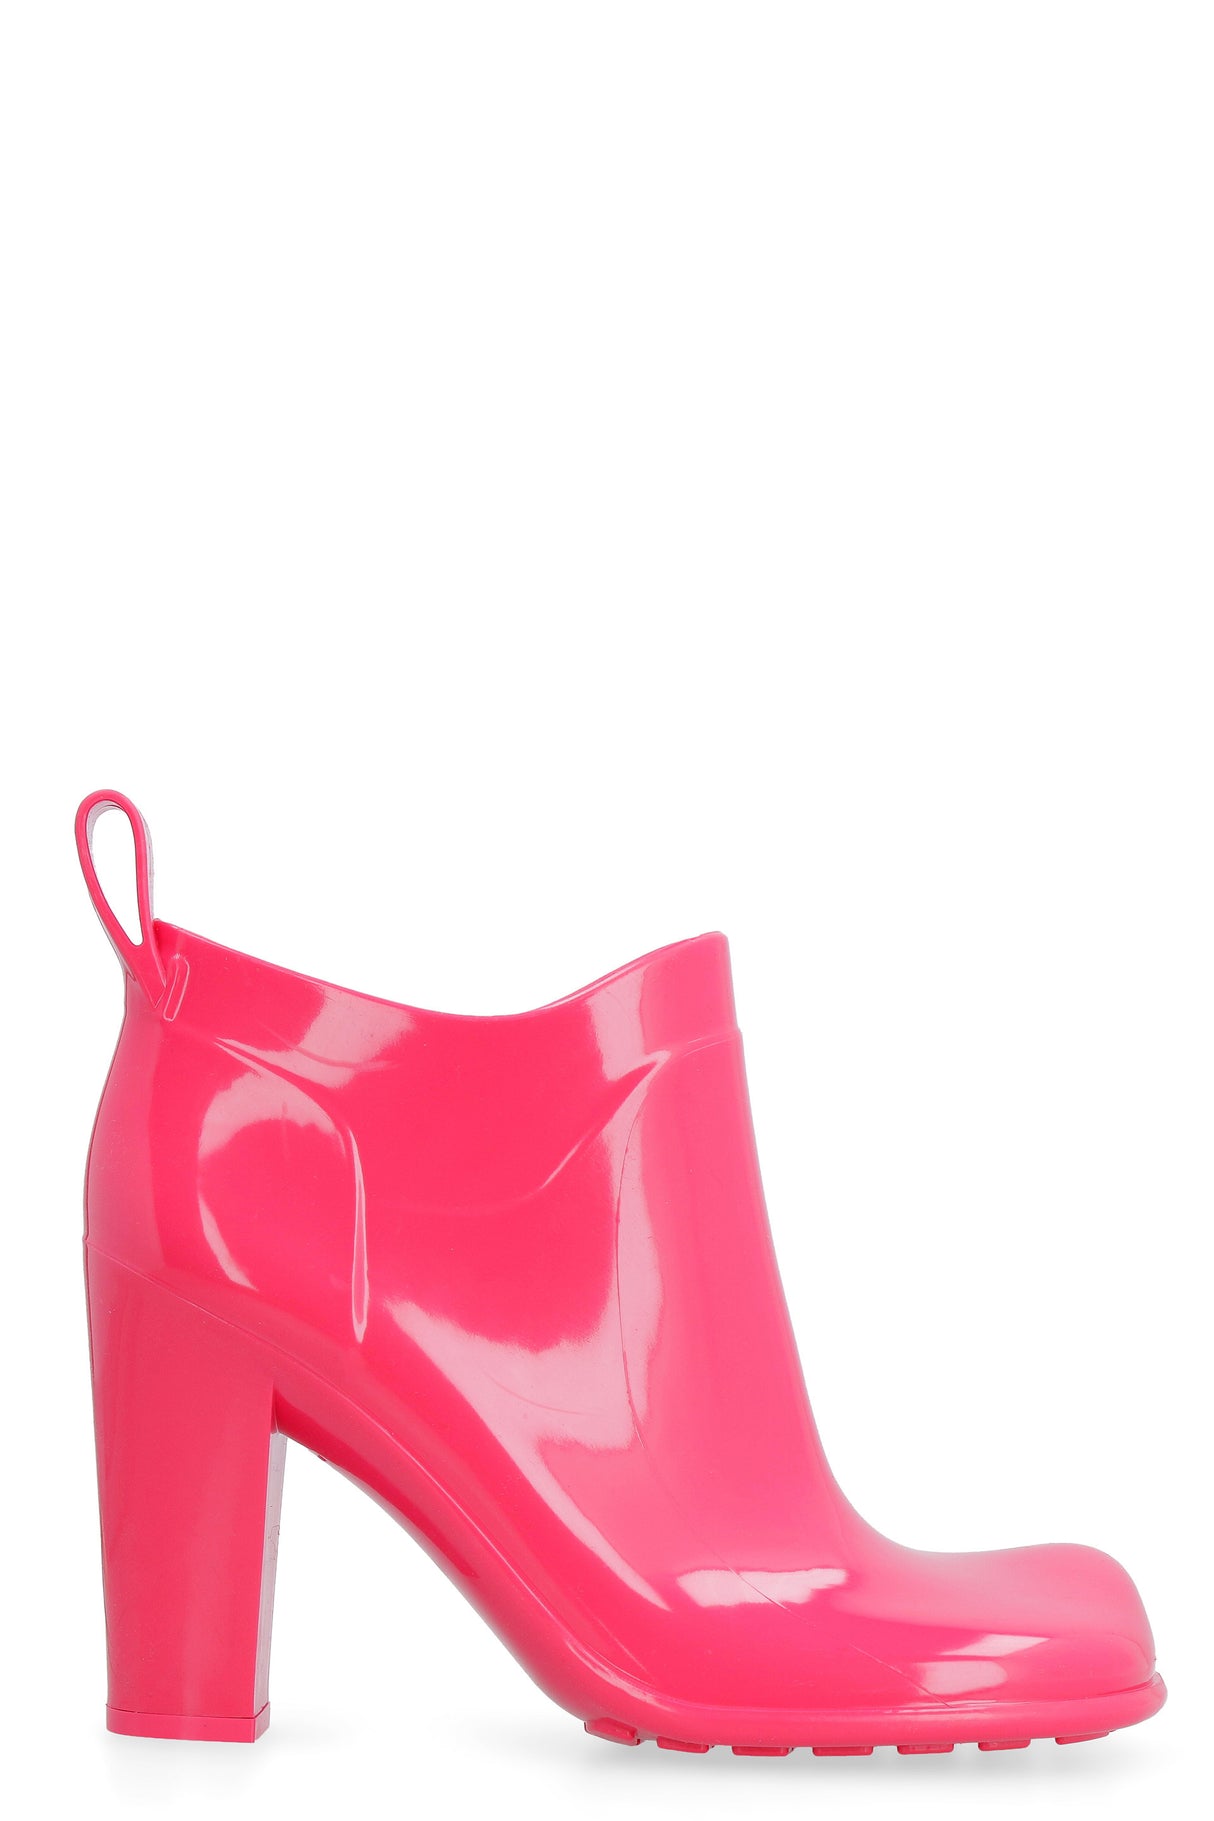 أحذية كاحل ويدجز وردي اللون للنساء | FW21